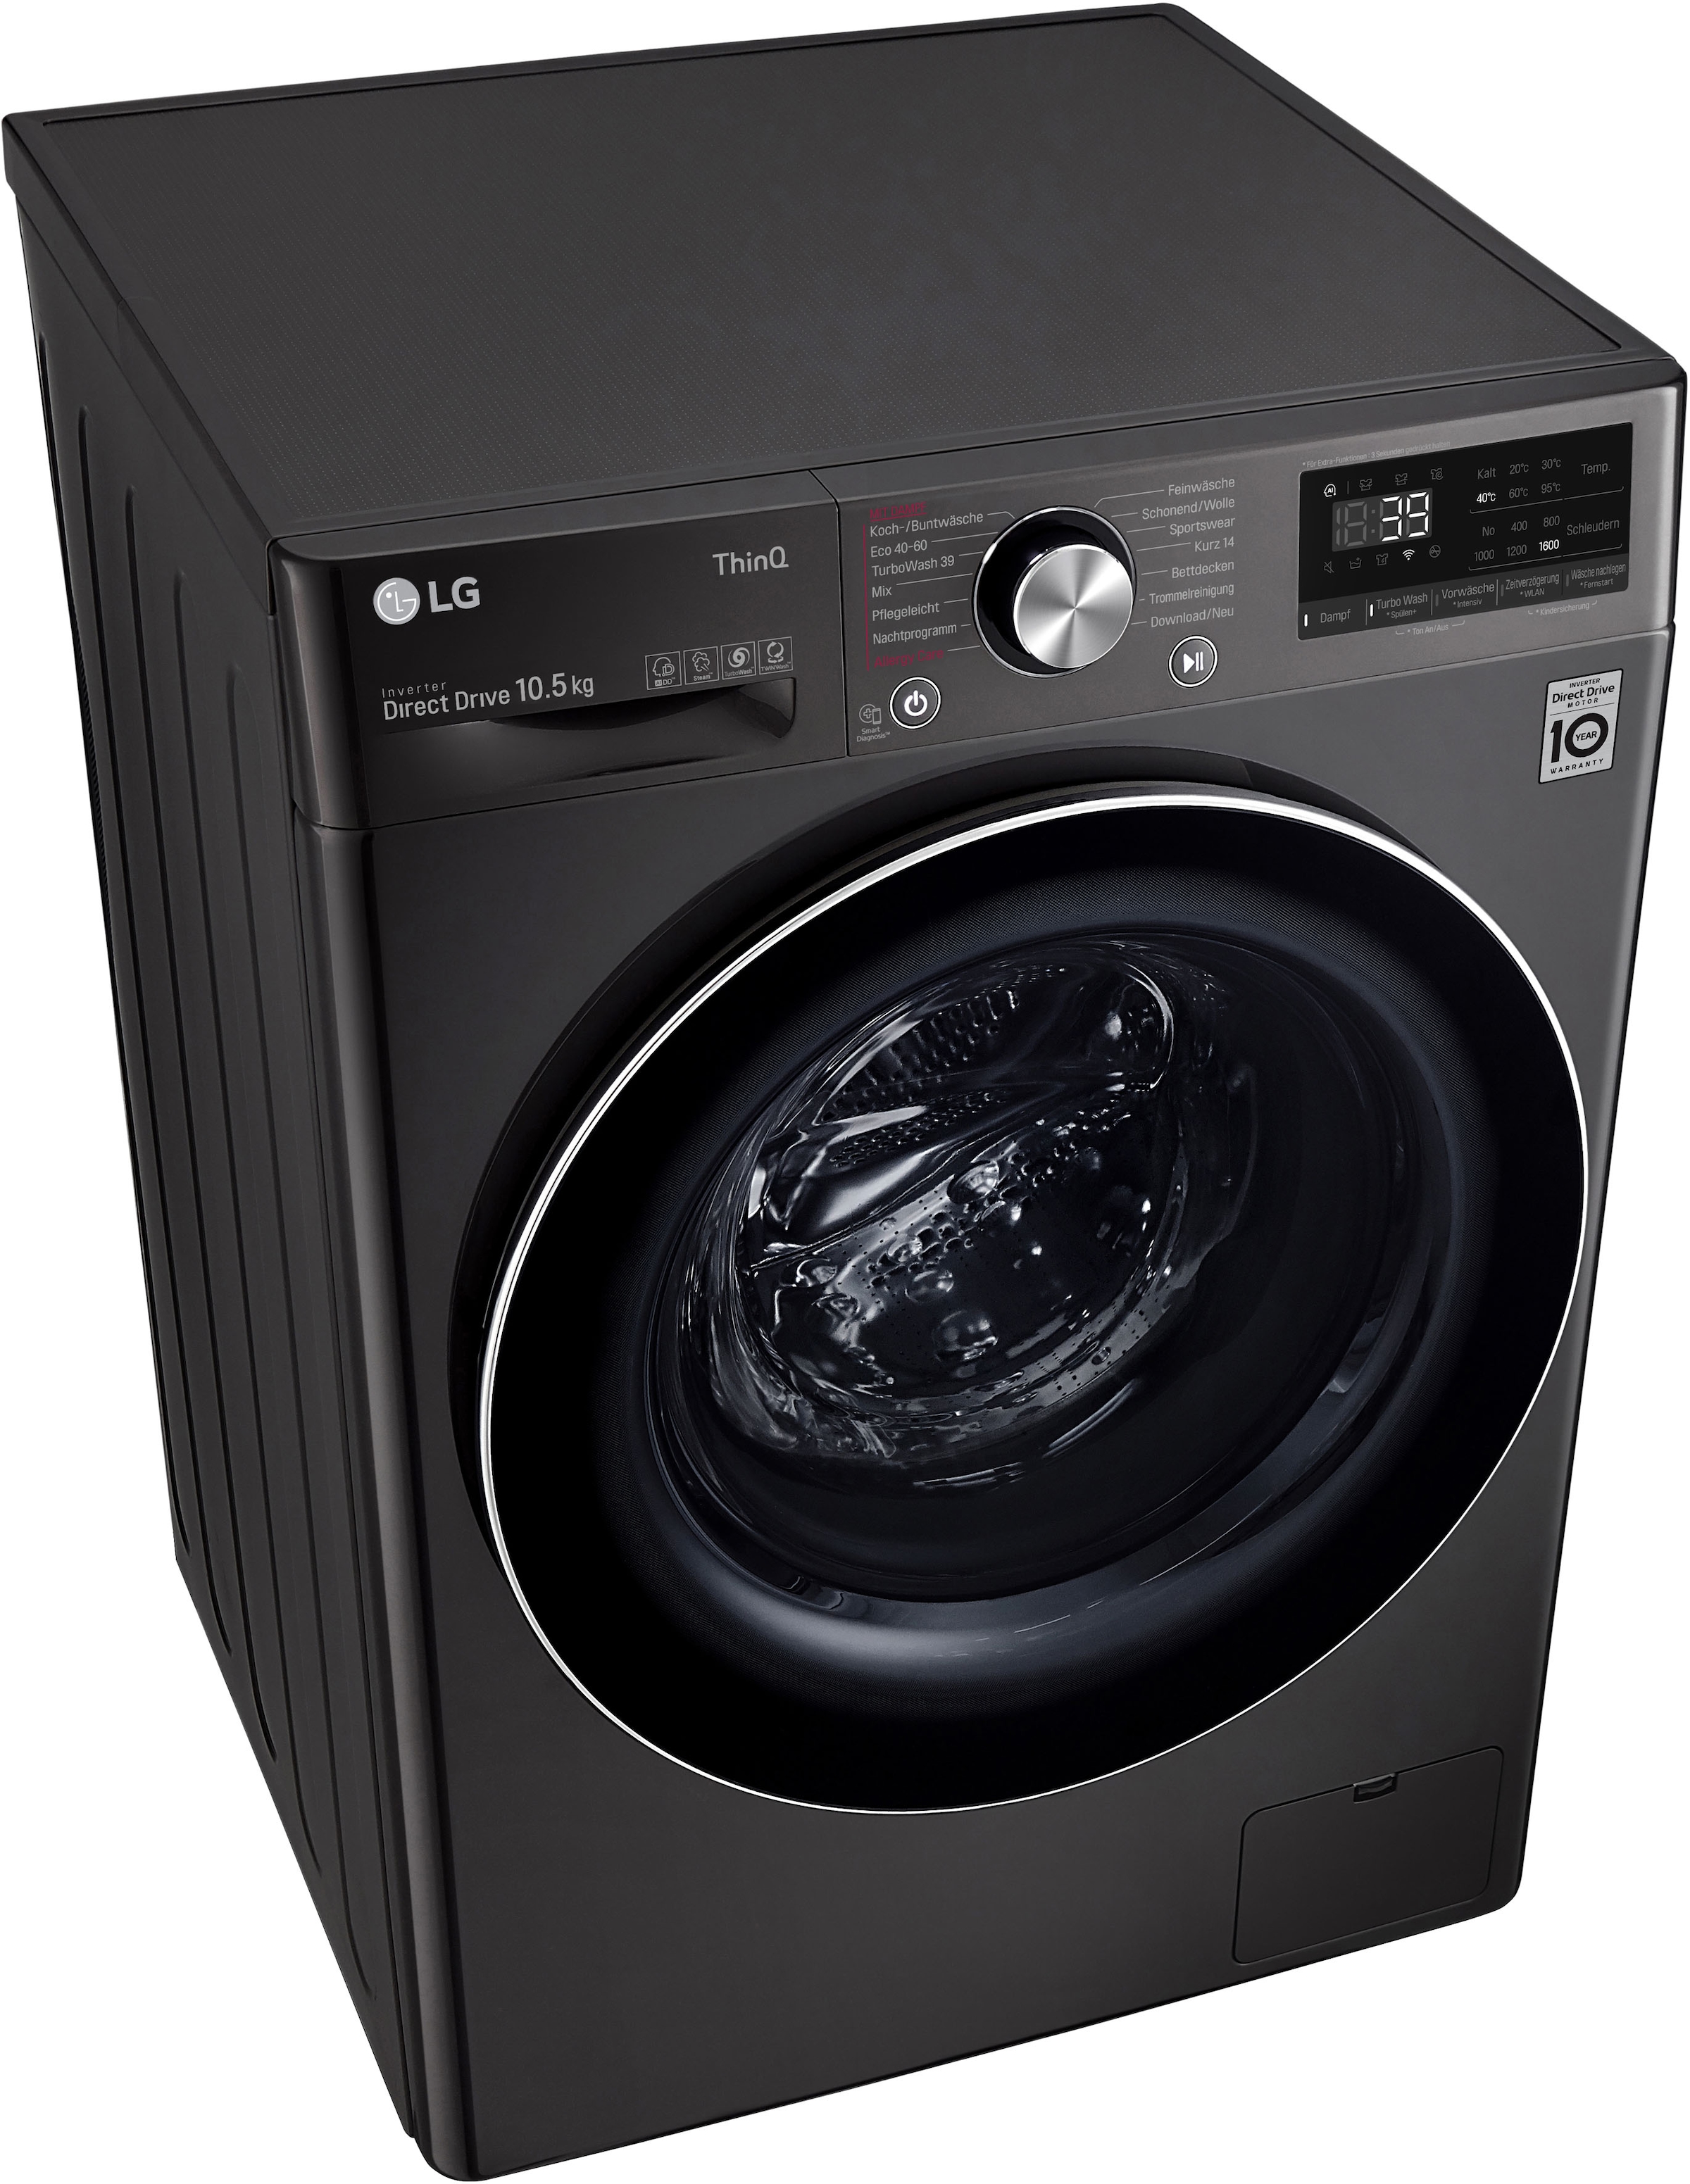 LG Waschmaschine »F6WV710P2S«, in mit Garantie U/min, Waschen 3 10,5 F6WV710P2S, XXL 39 Jahren TurboWash® kg, 1600 - Minuten nur